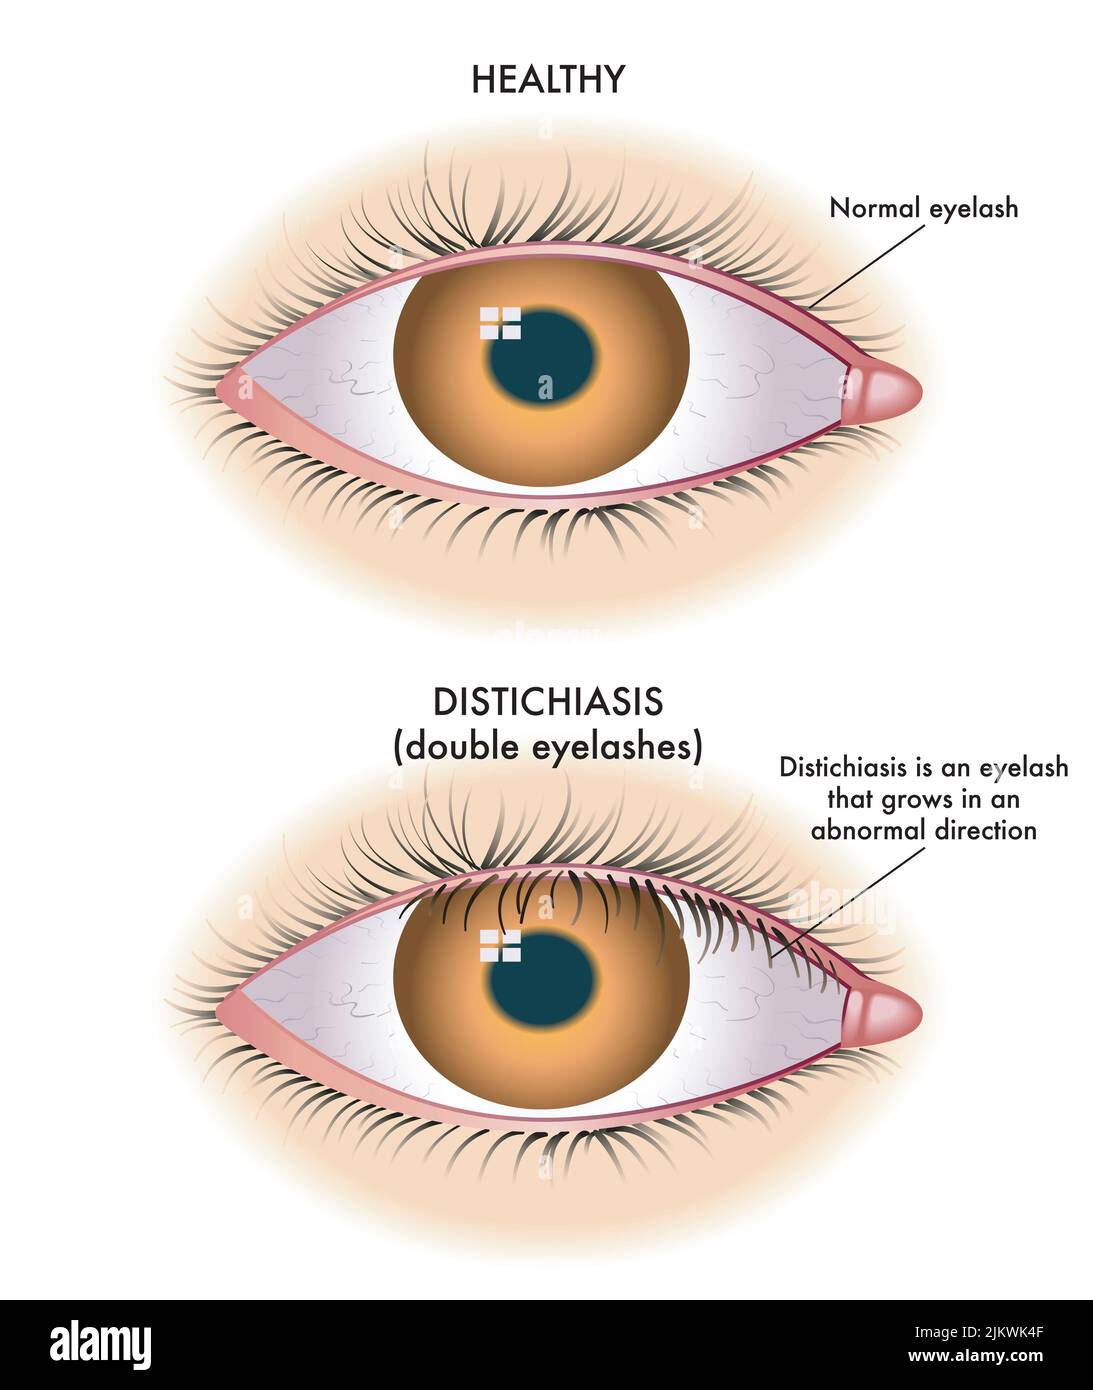 L'illustration médicale montre la comparaison entre un œil normal et un œil affecté par la distichiasis. Banque D'Images